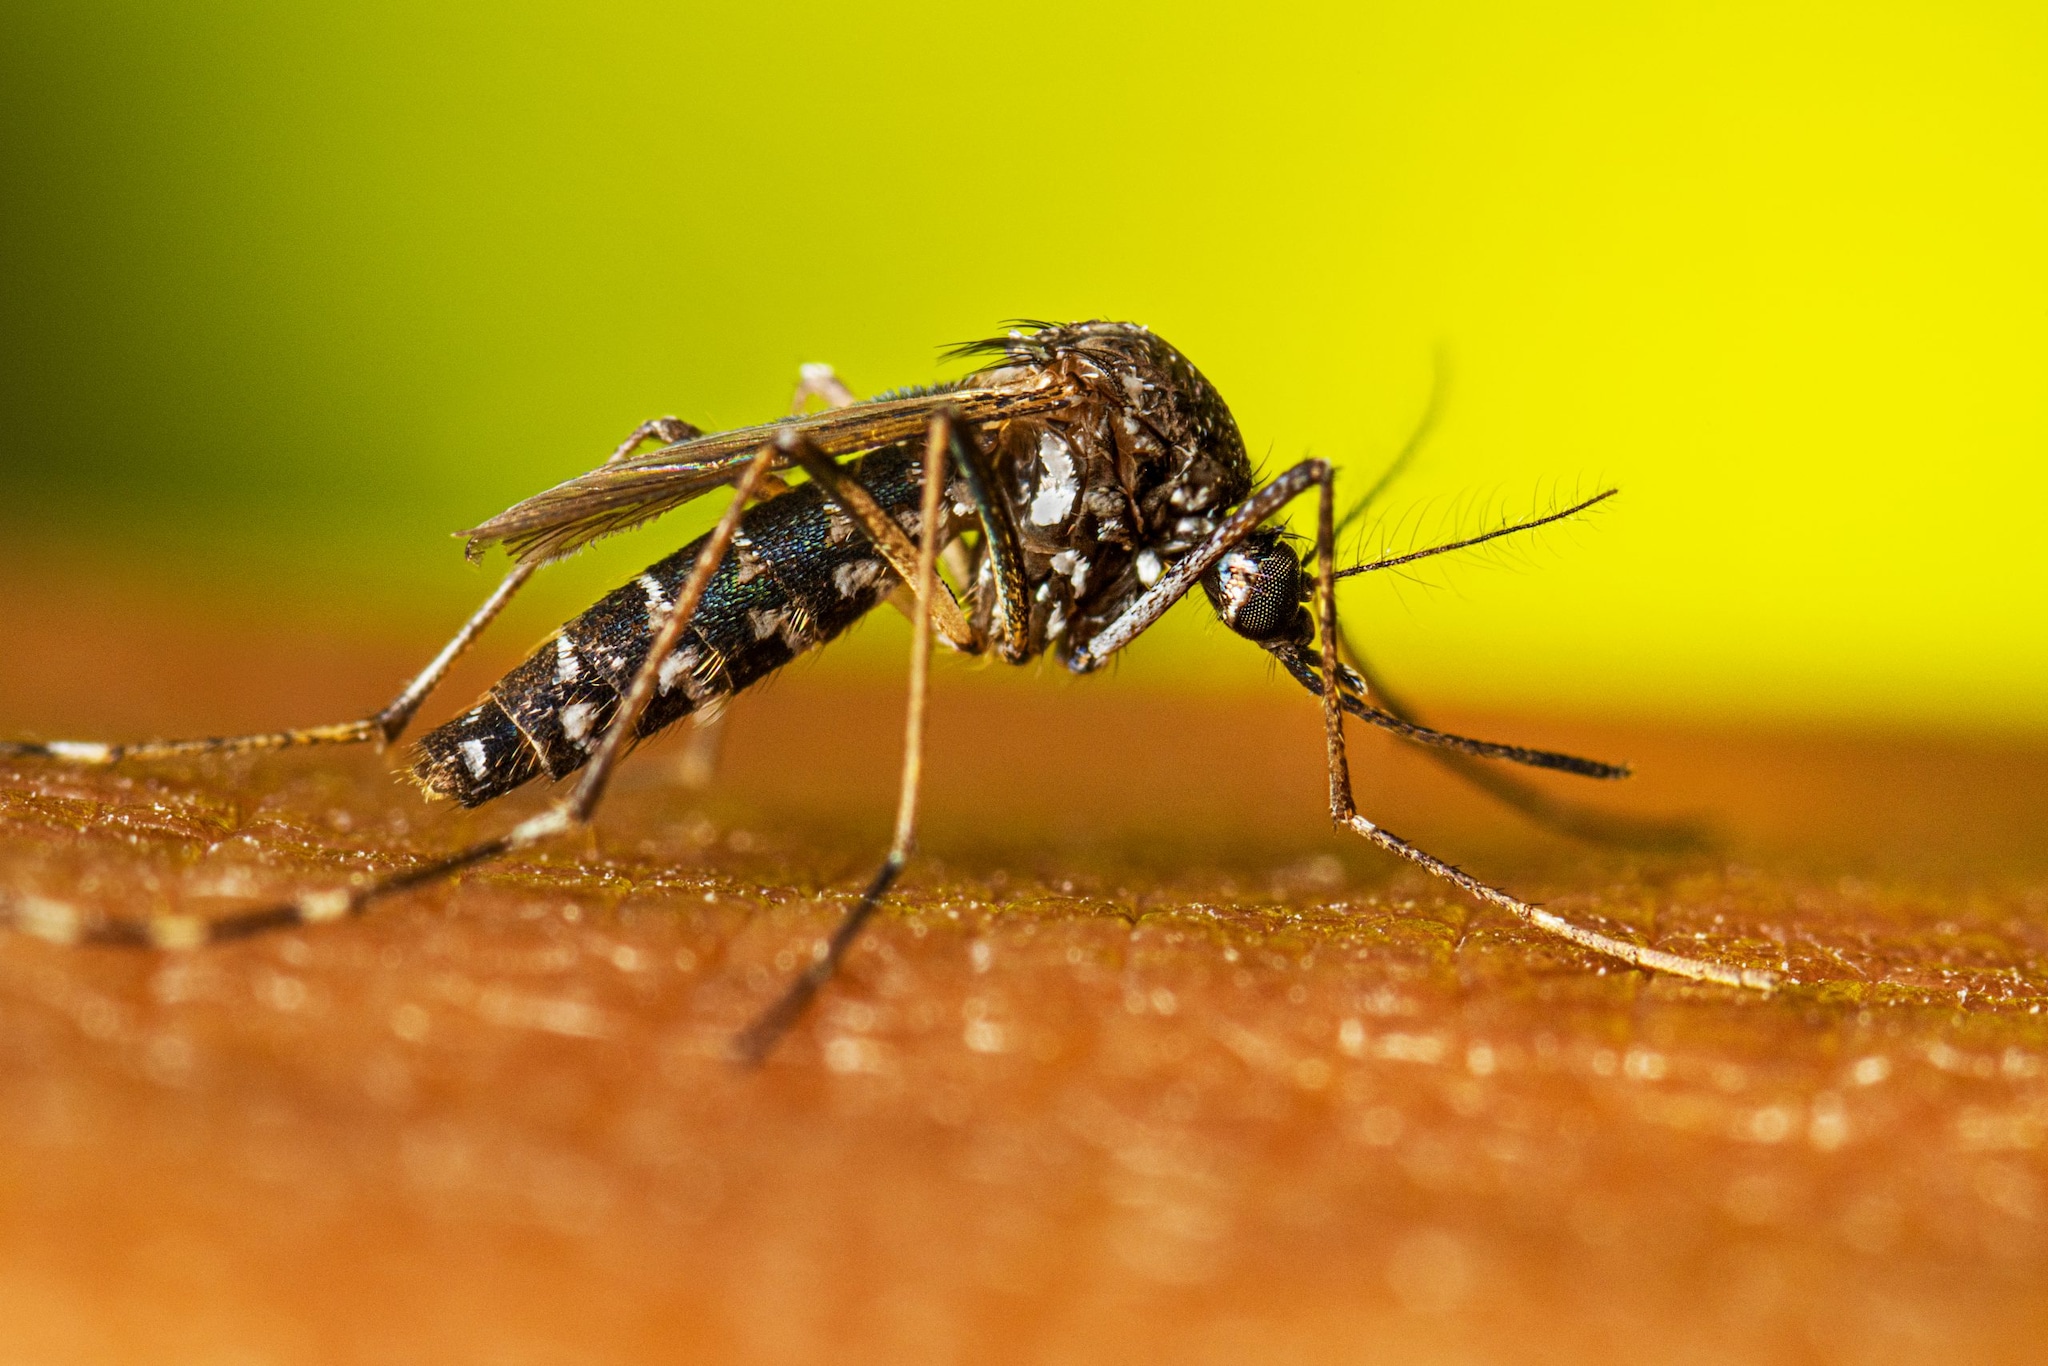 Adult female Aedes albopictus resting